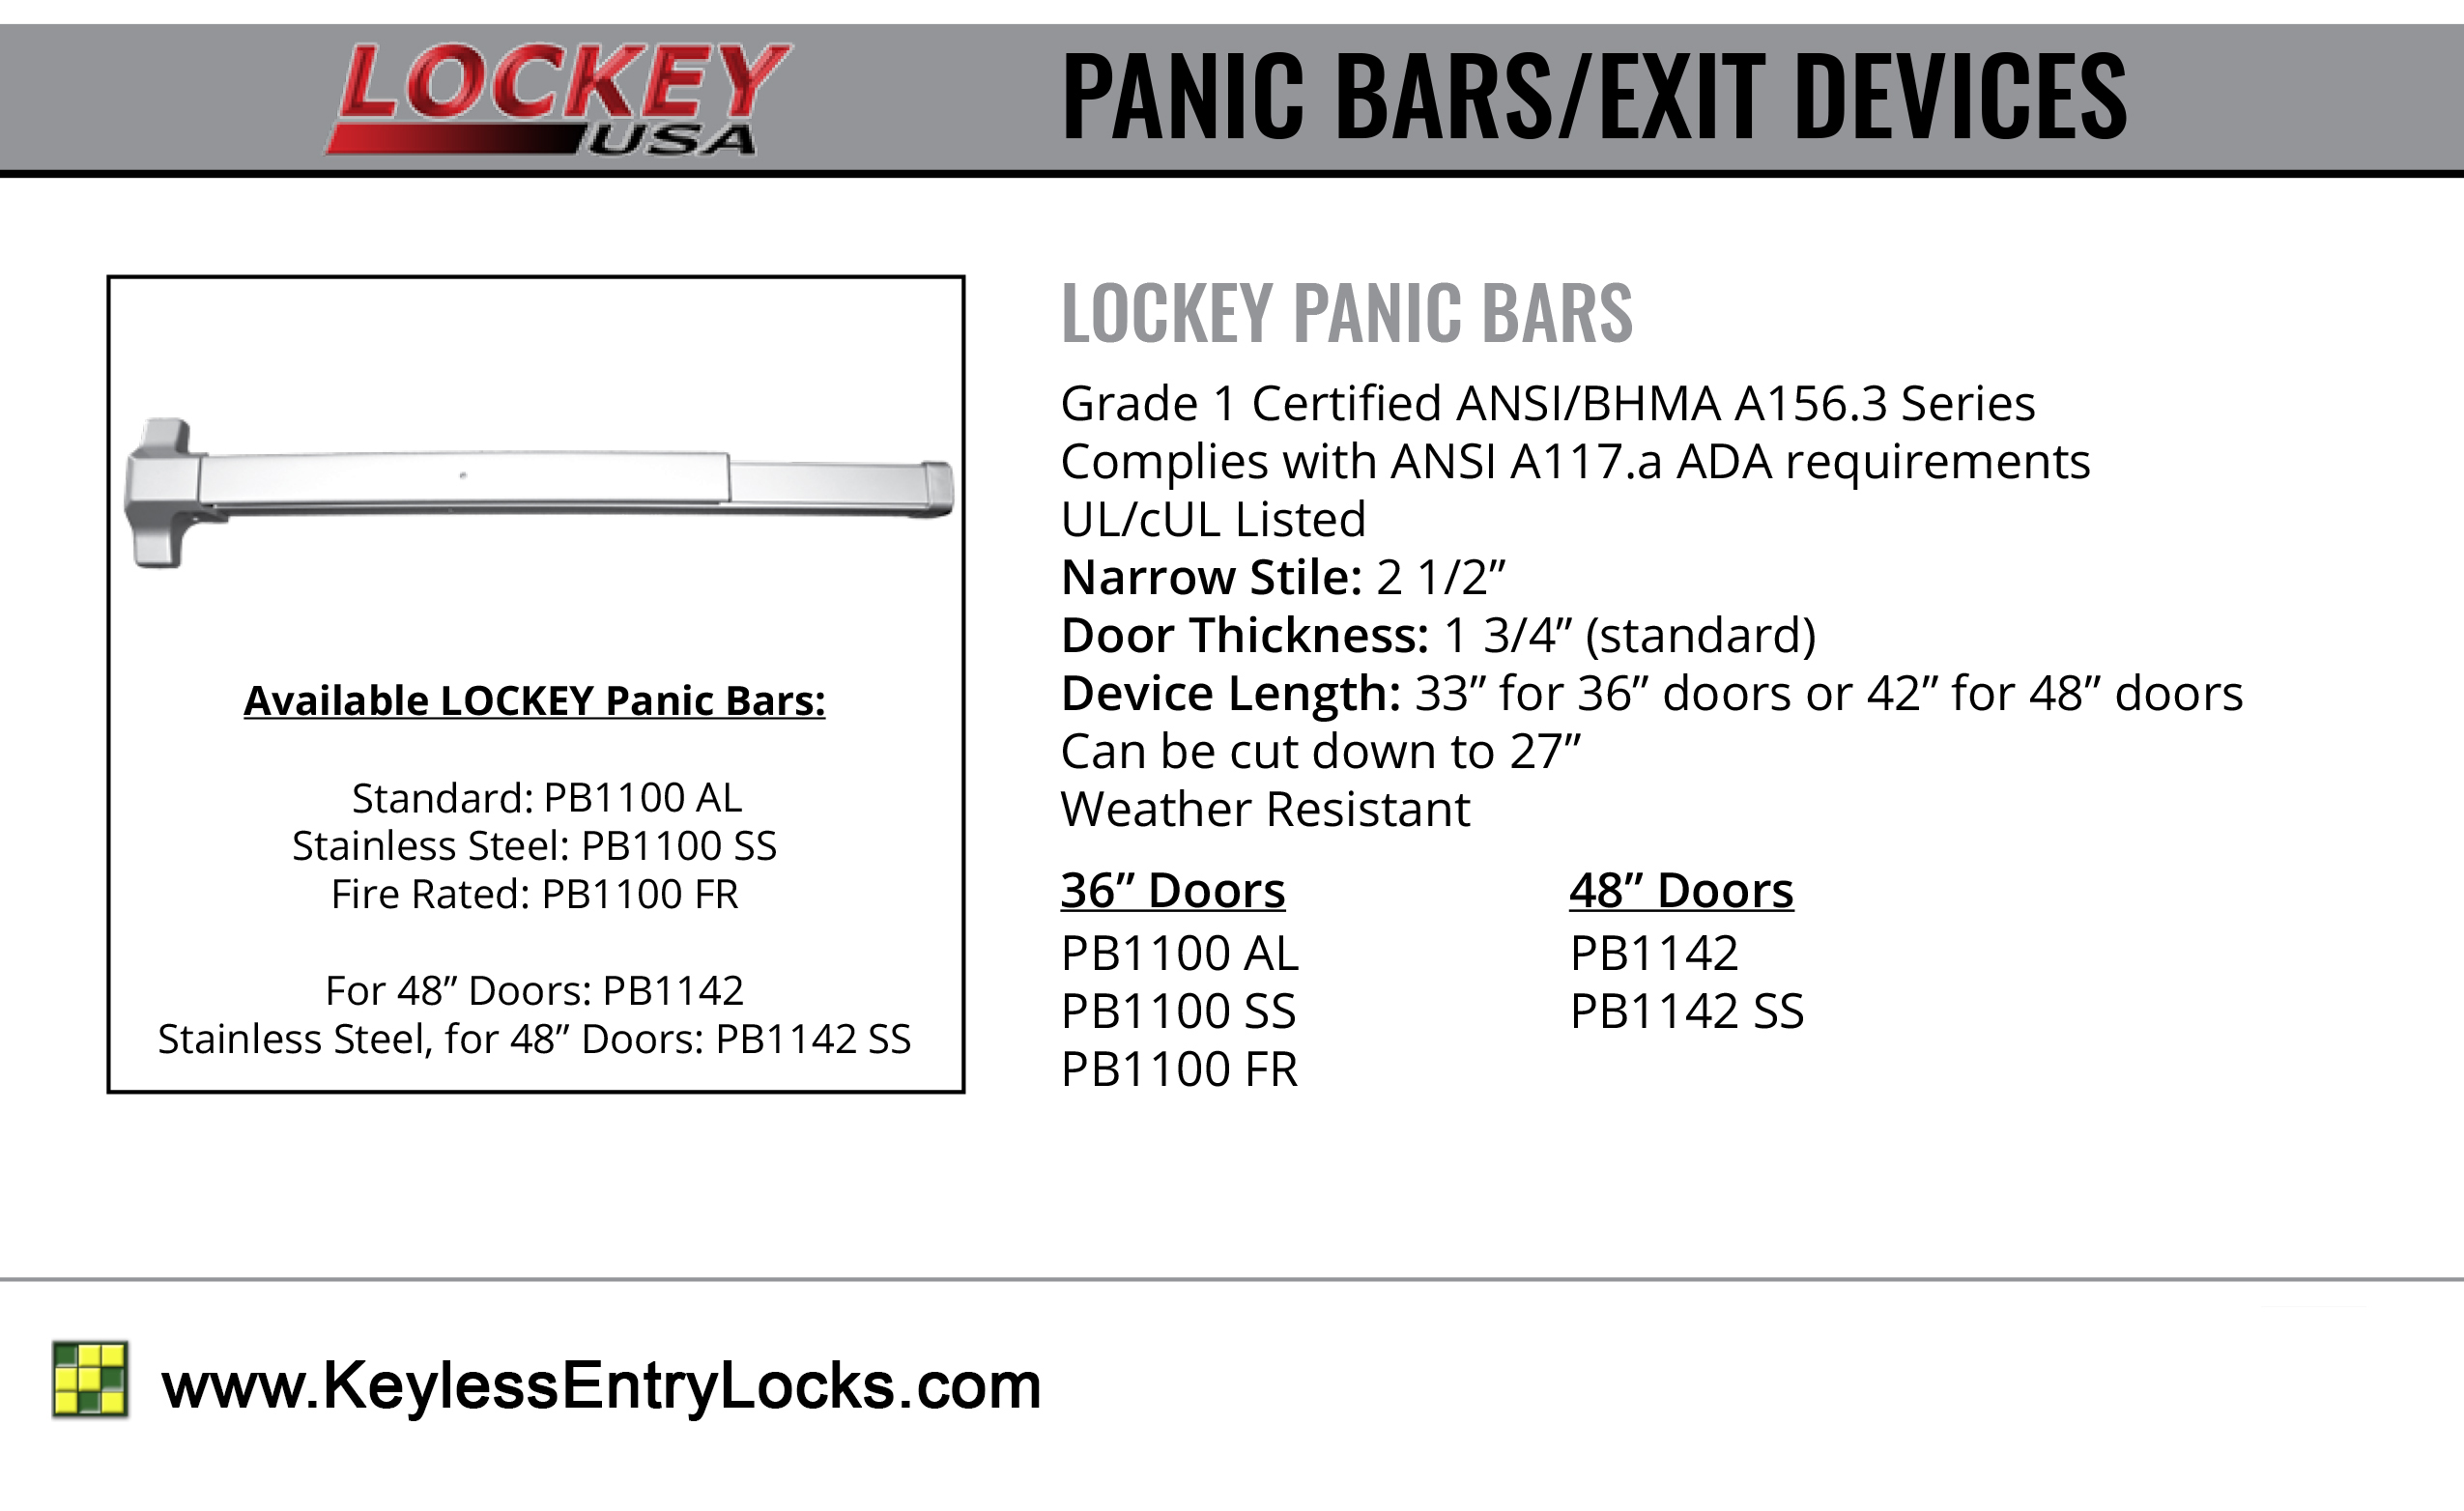 Panic Bars - Lockey PB1100